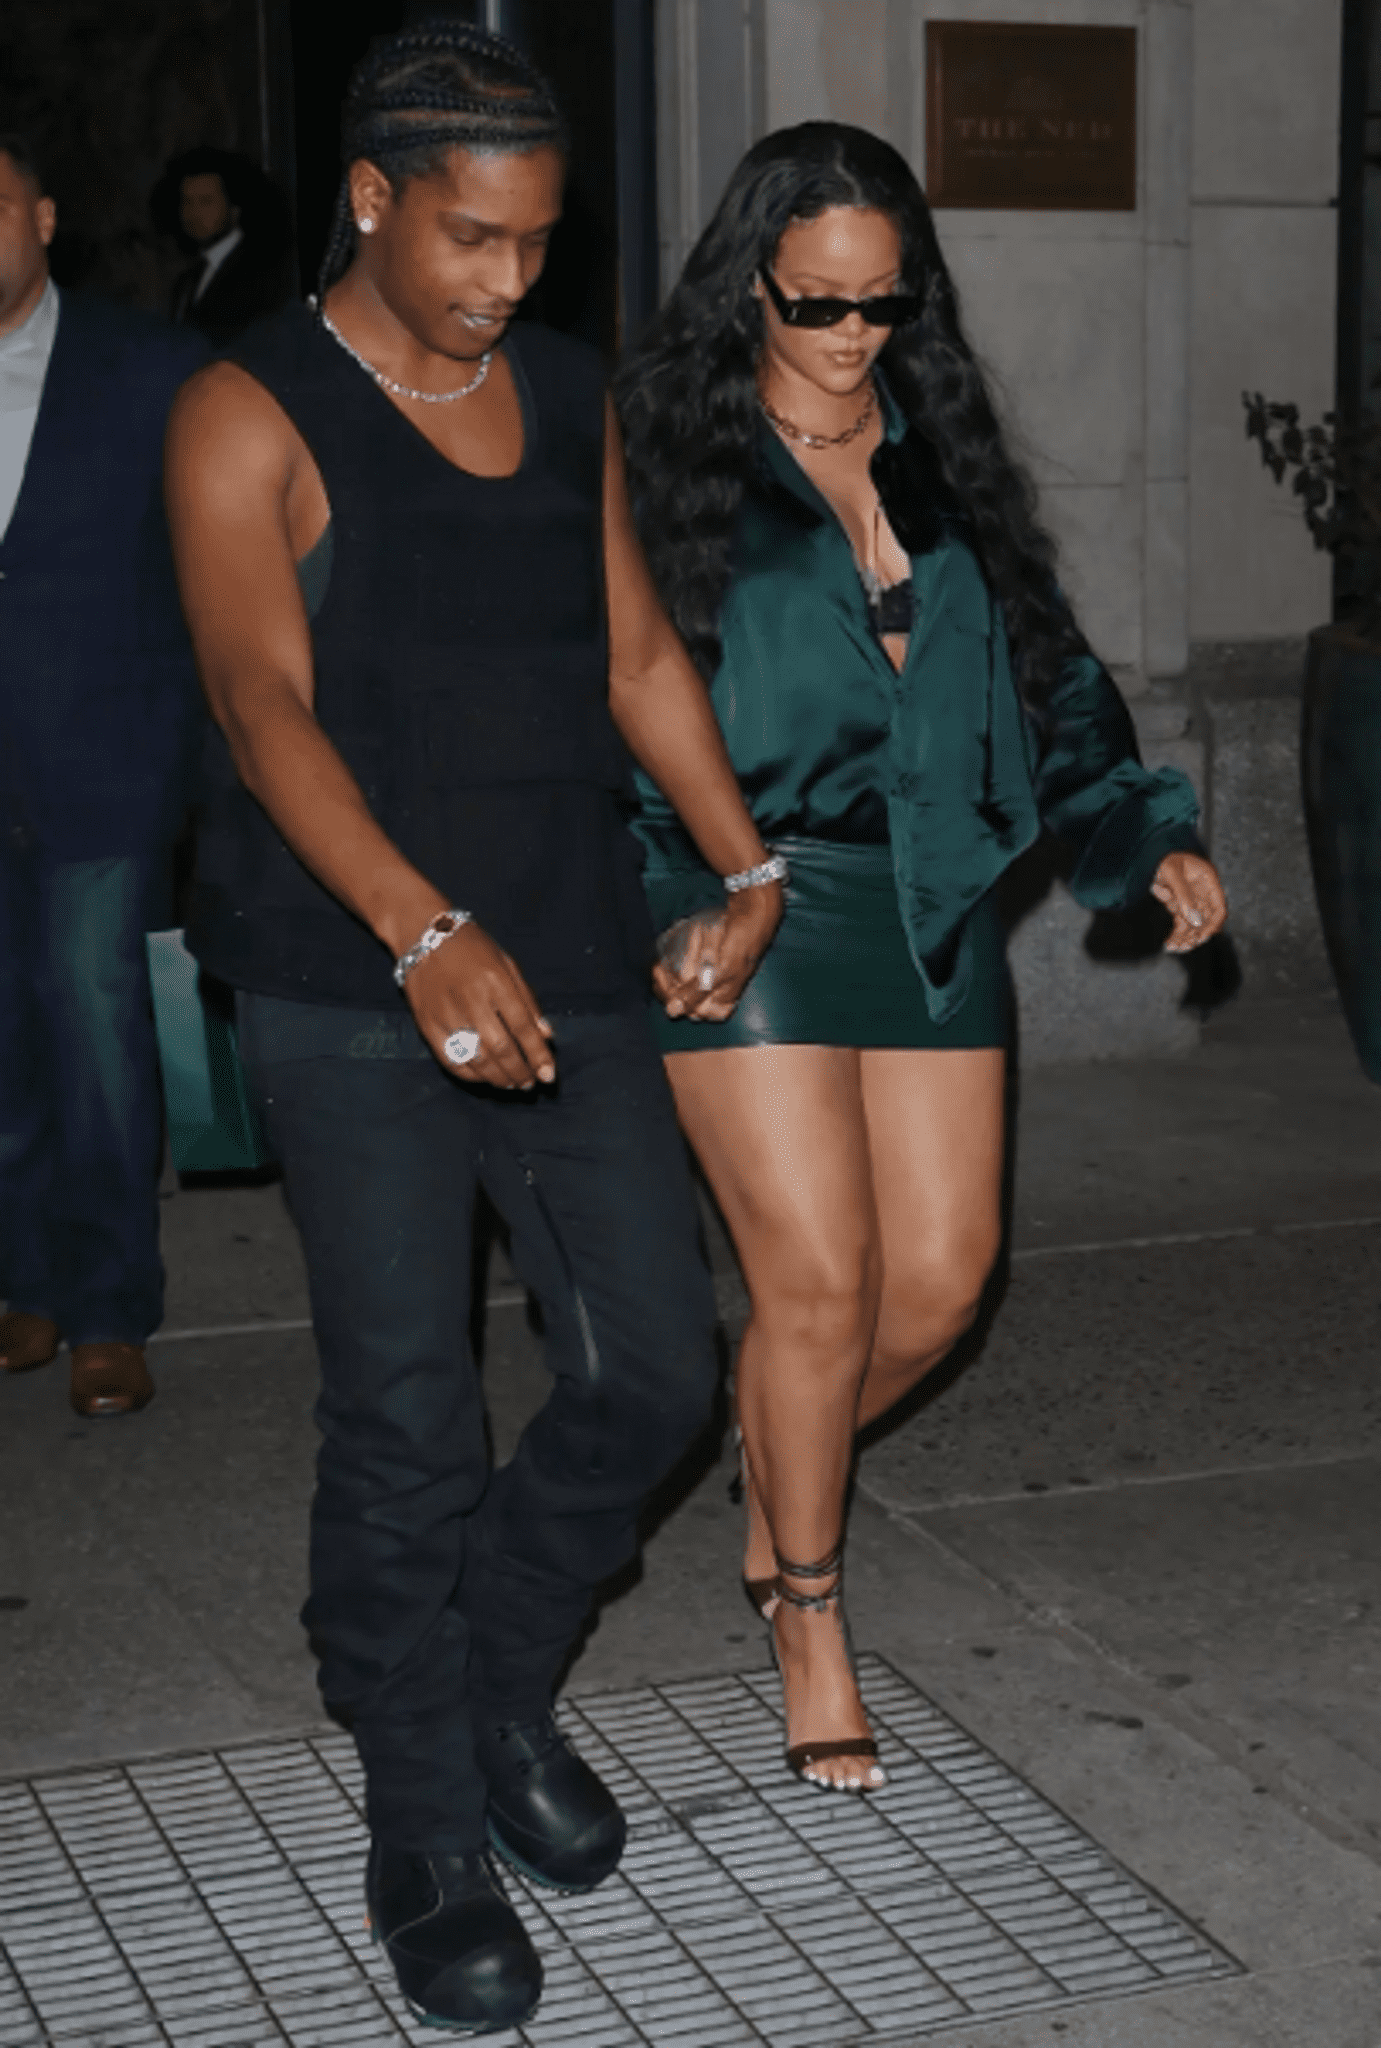 Рианна откровенно одевается для свидания с A$AP Rocky в кожаную мини-юбку